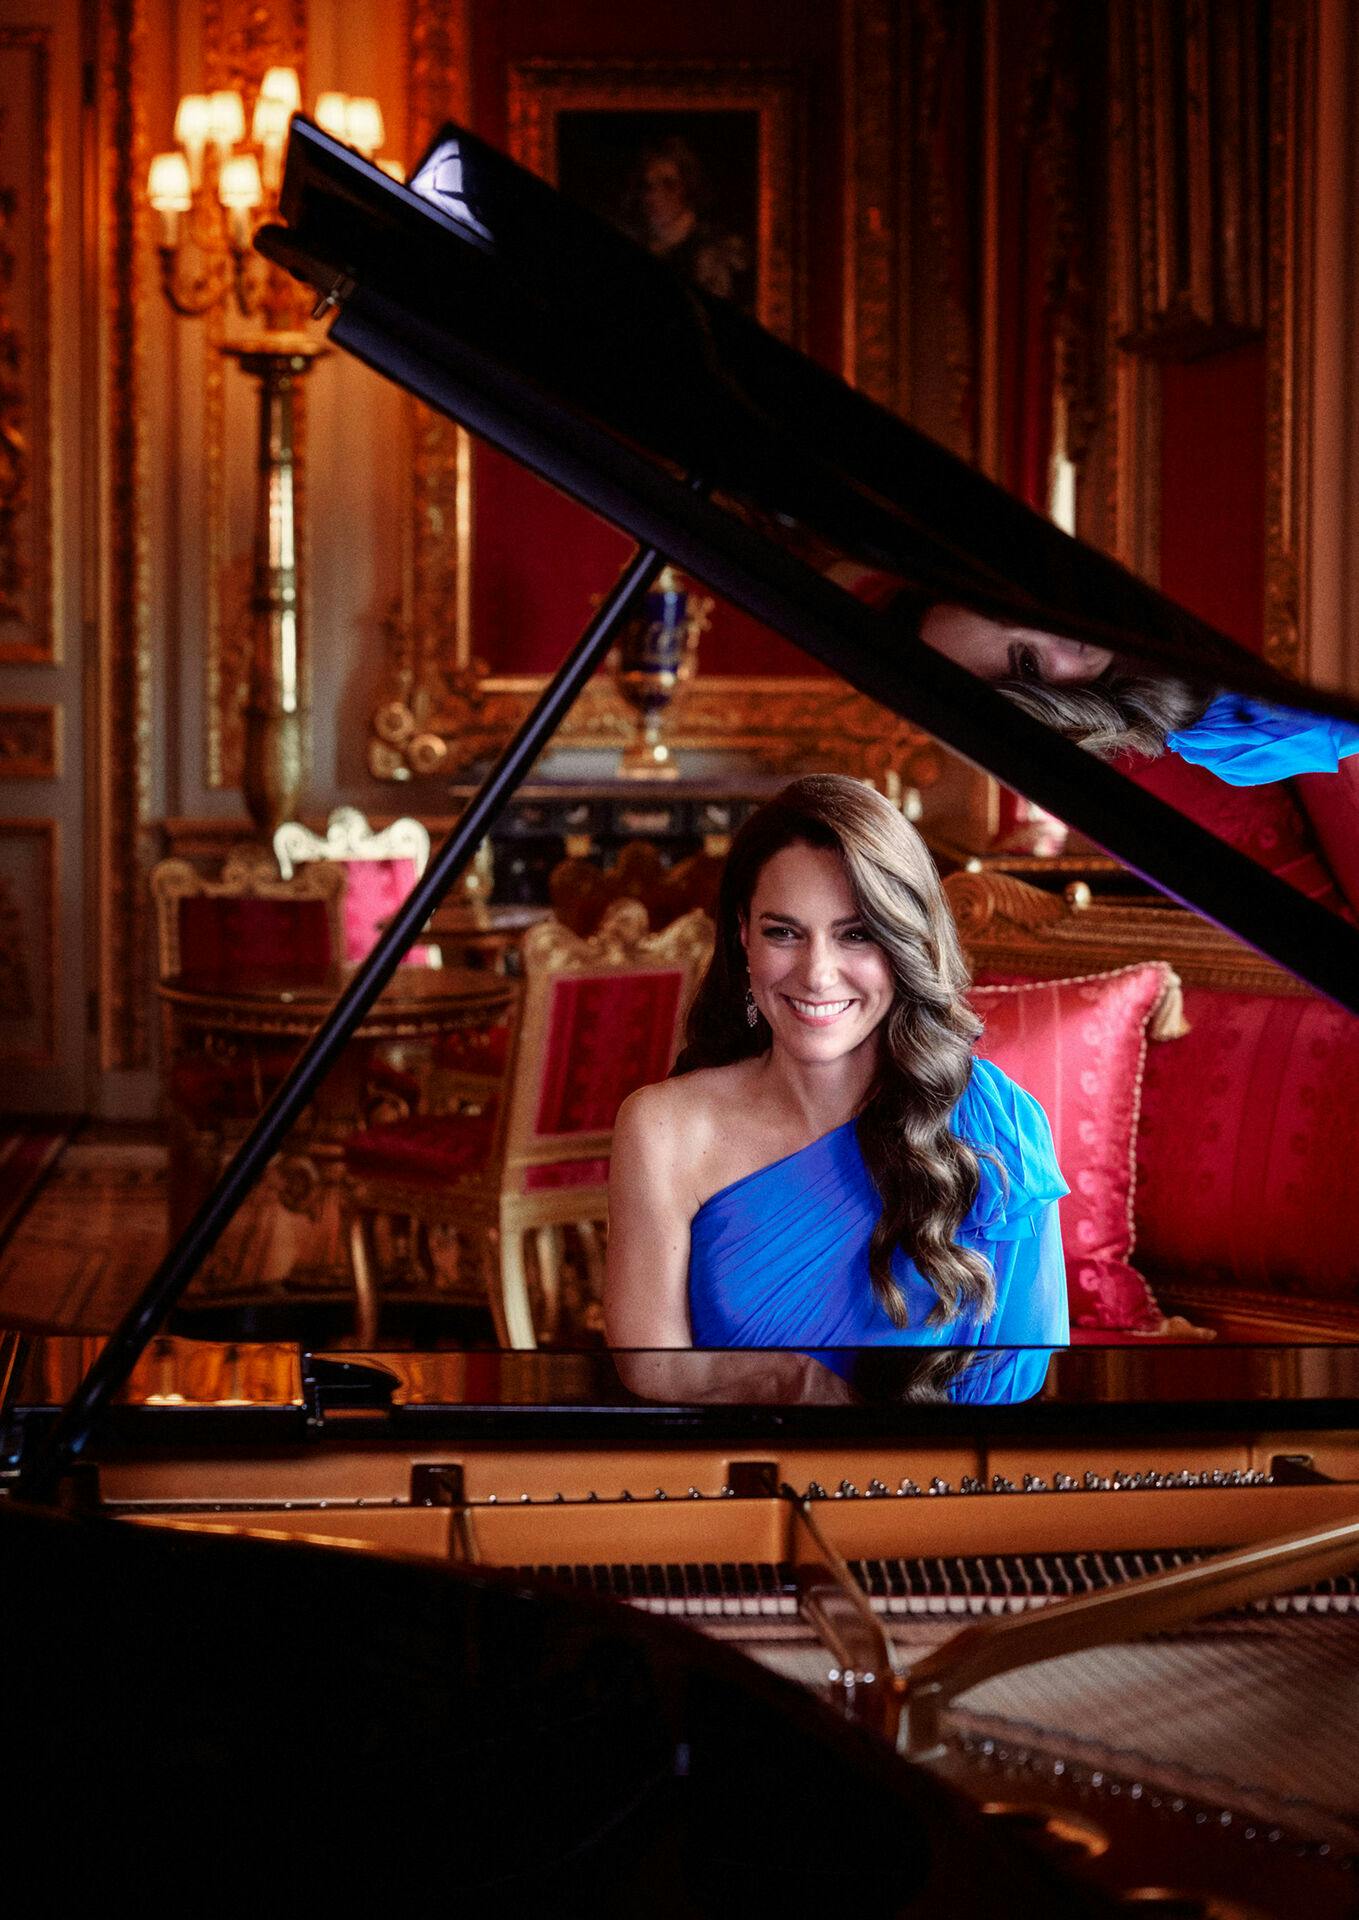 Kensington Palace har efterfølgende delt dette foto af hertuginde Kate ved et klaver.
